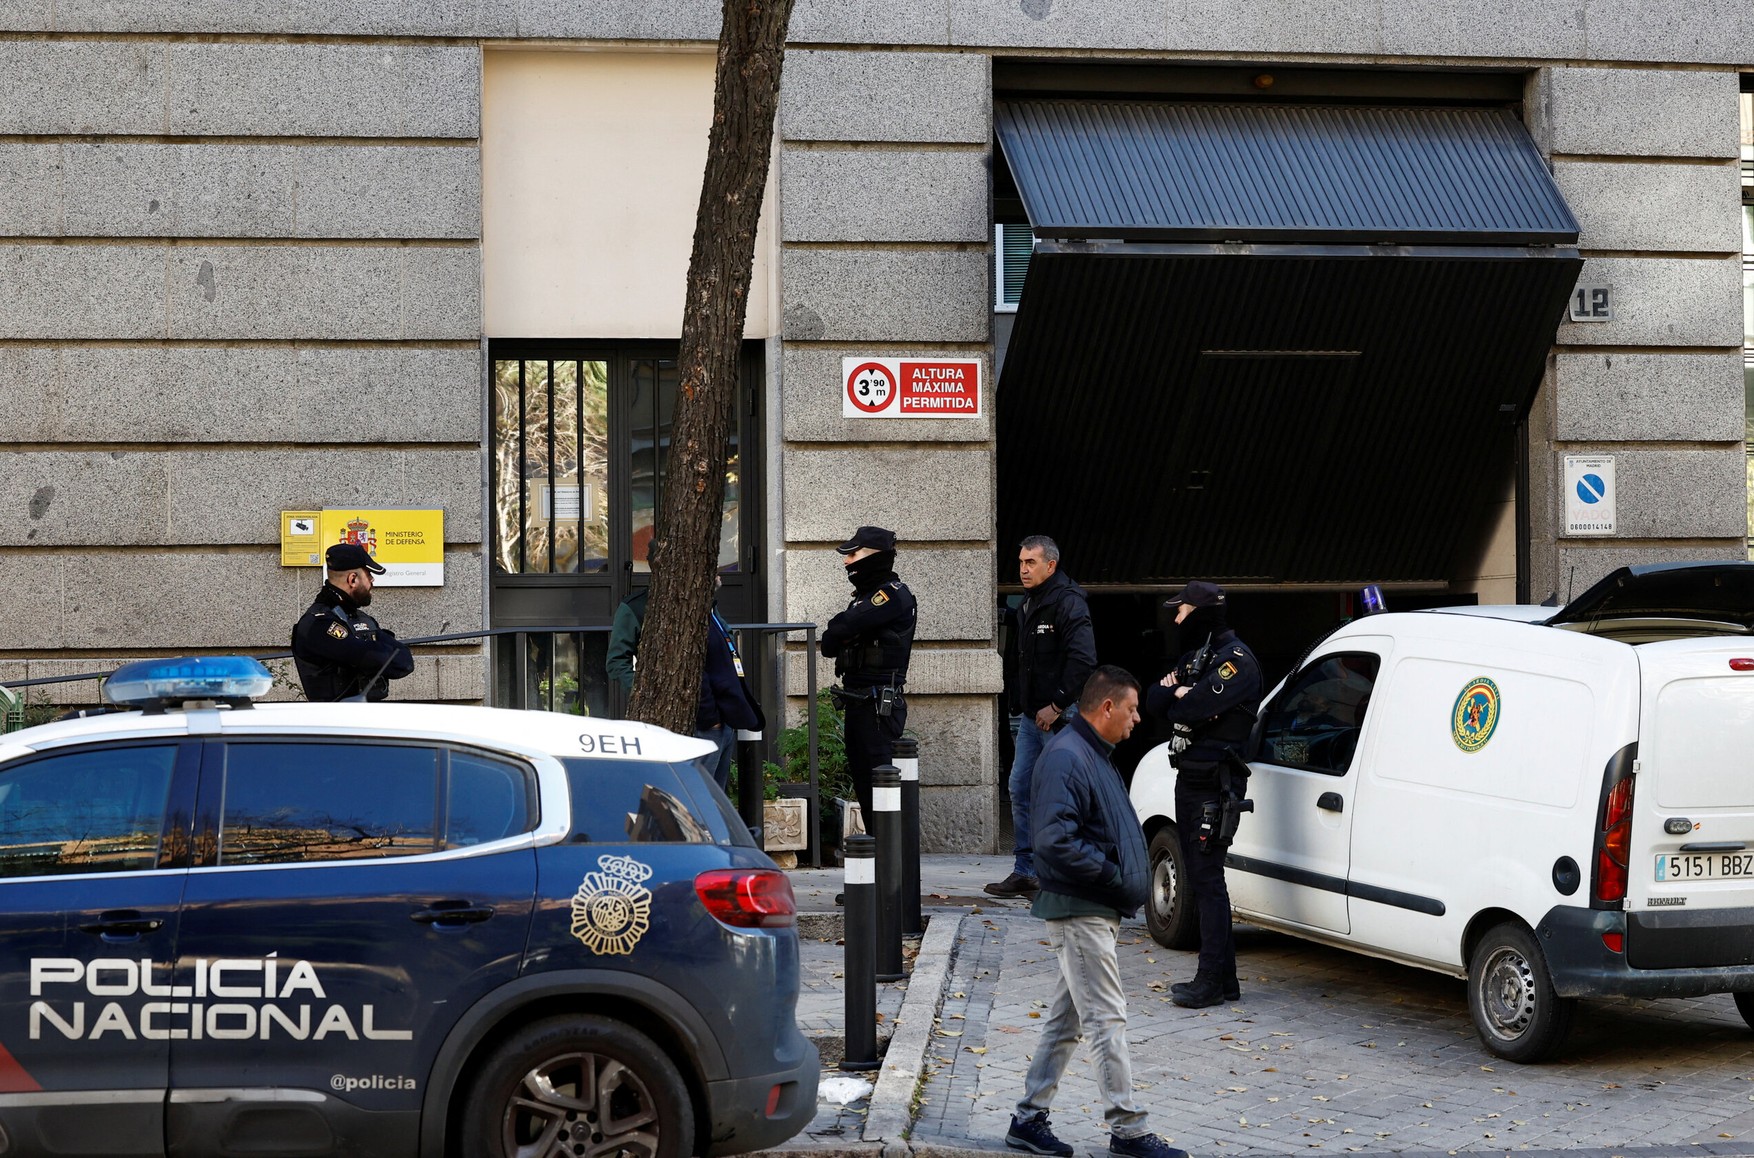 В Испании задержали подозреваемого в рассылке бомб по почте. Один из конвертов взорвался в посольстве Украины